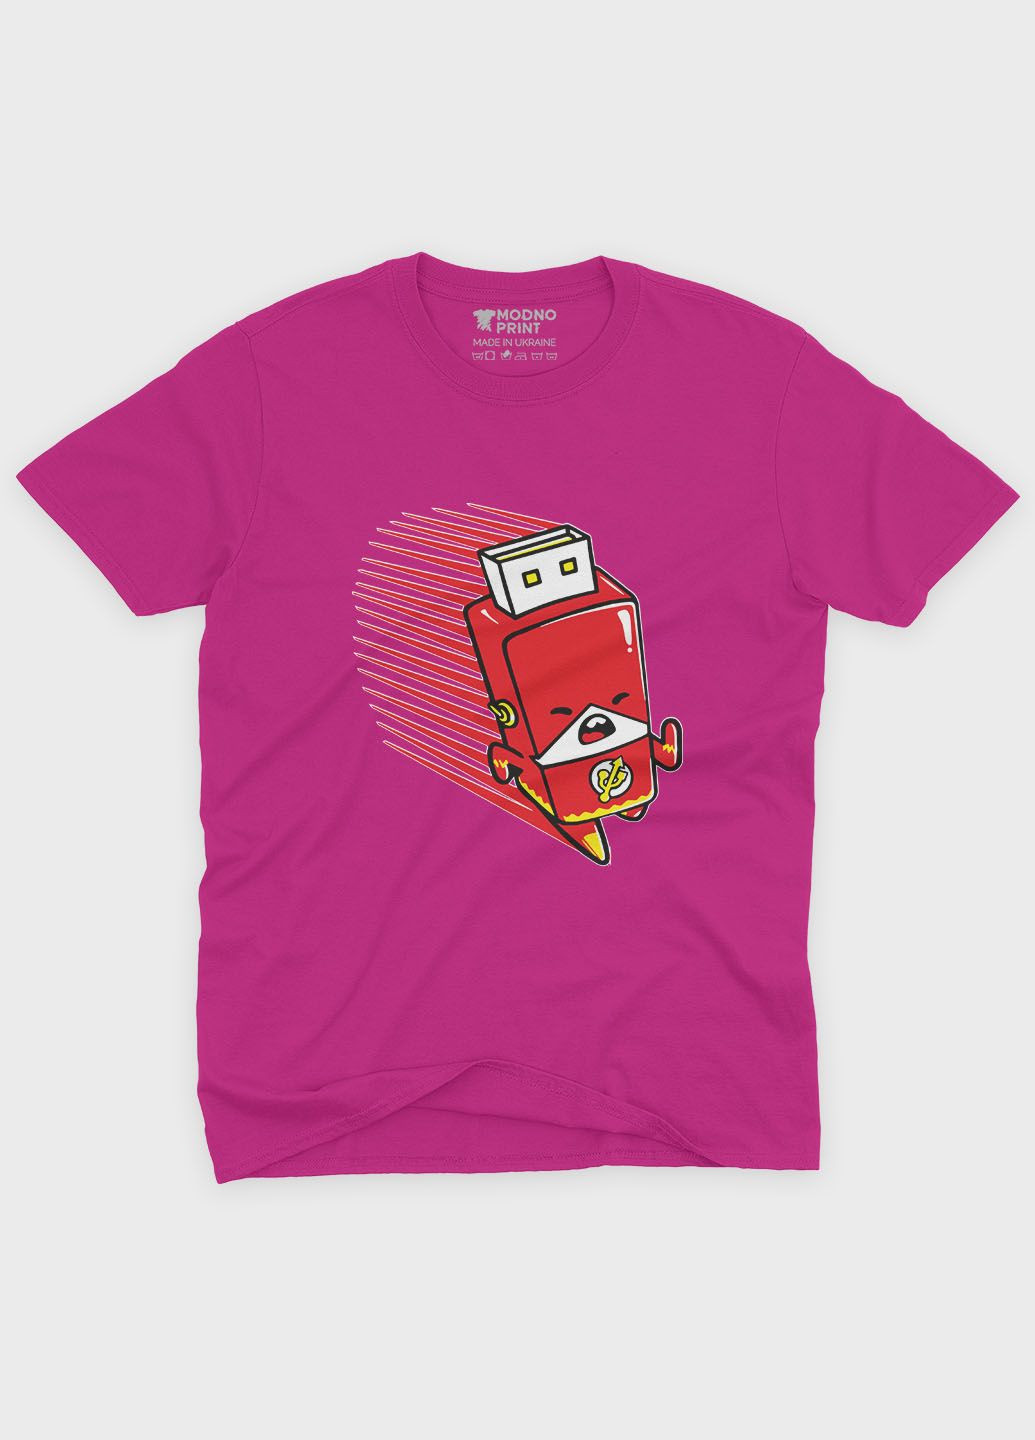 Рожева демісезонна футболка для дівчинки з принтом супергероя - флеш (ts001-1-fuxj-006-010-004-g) Modno